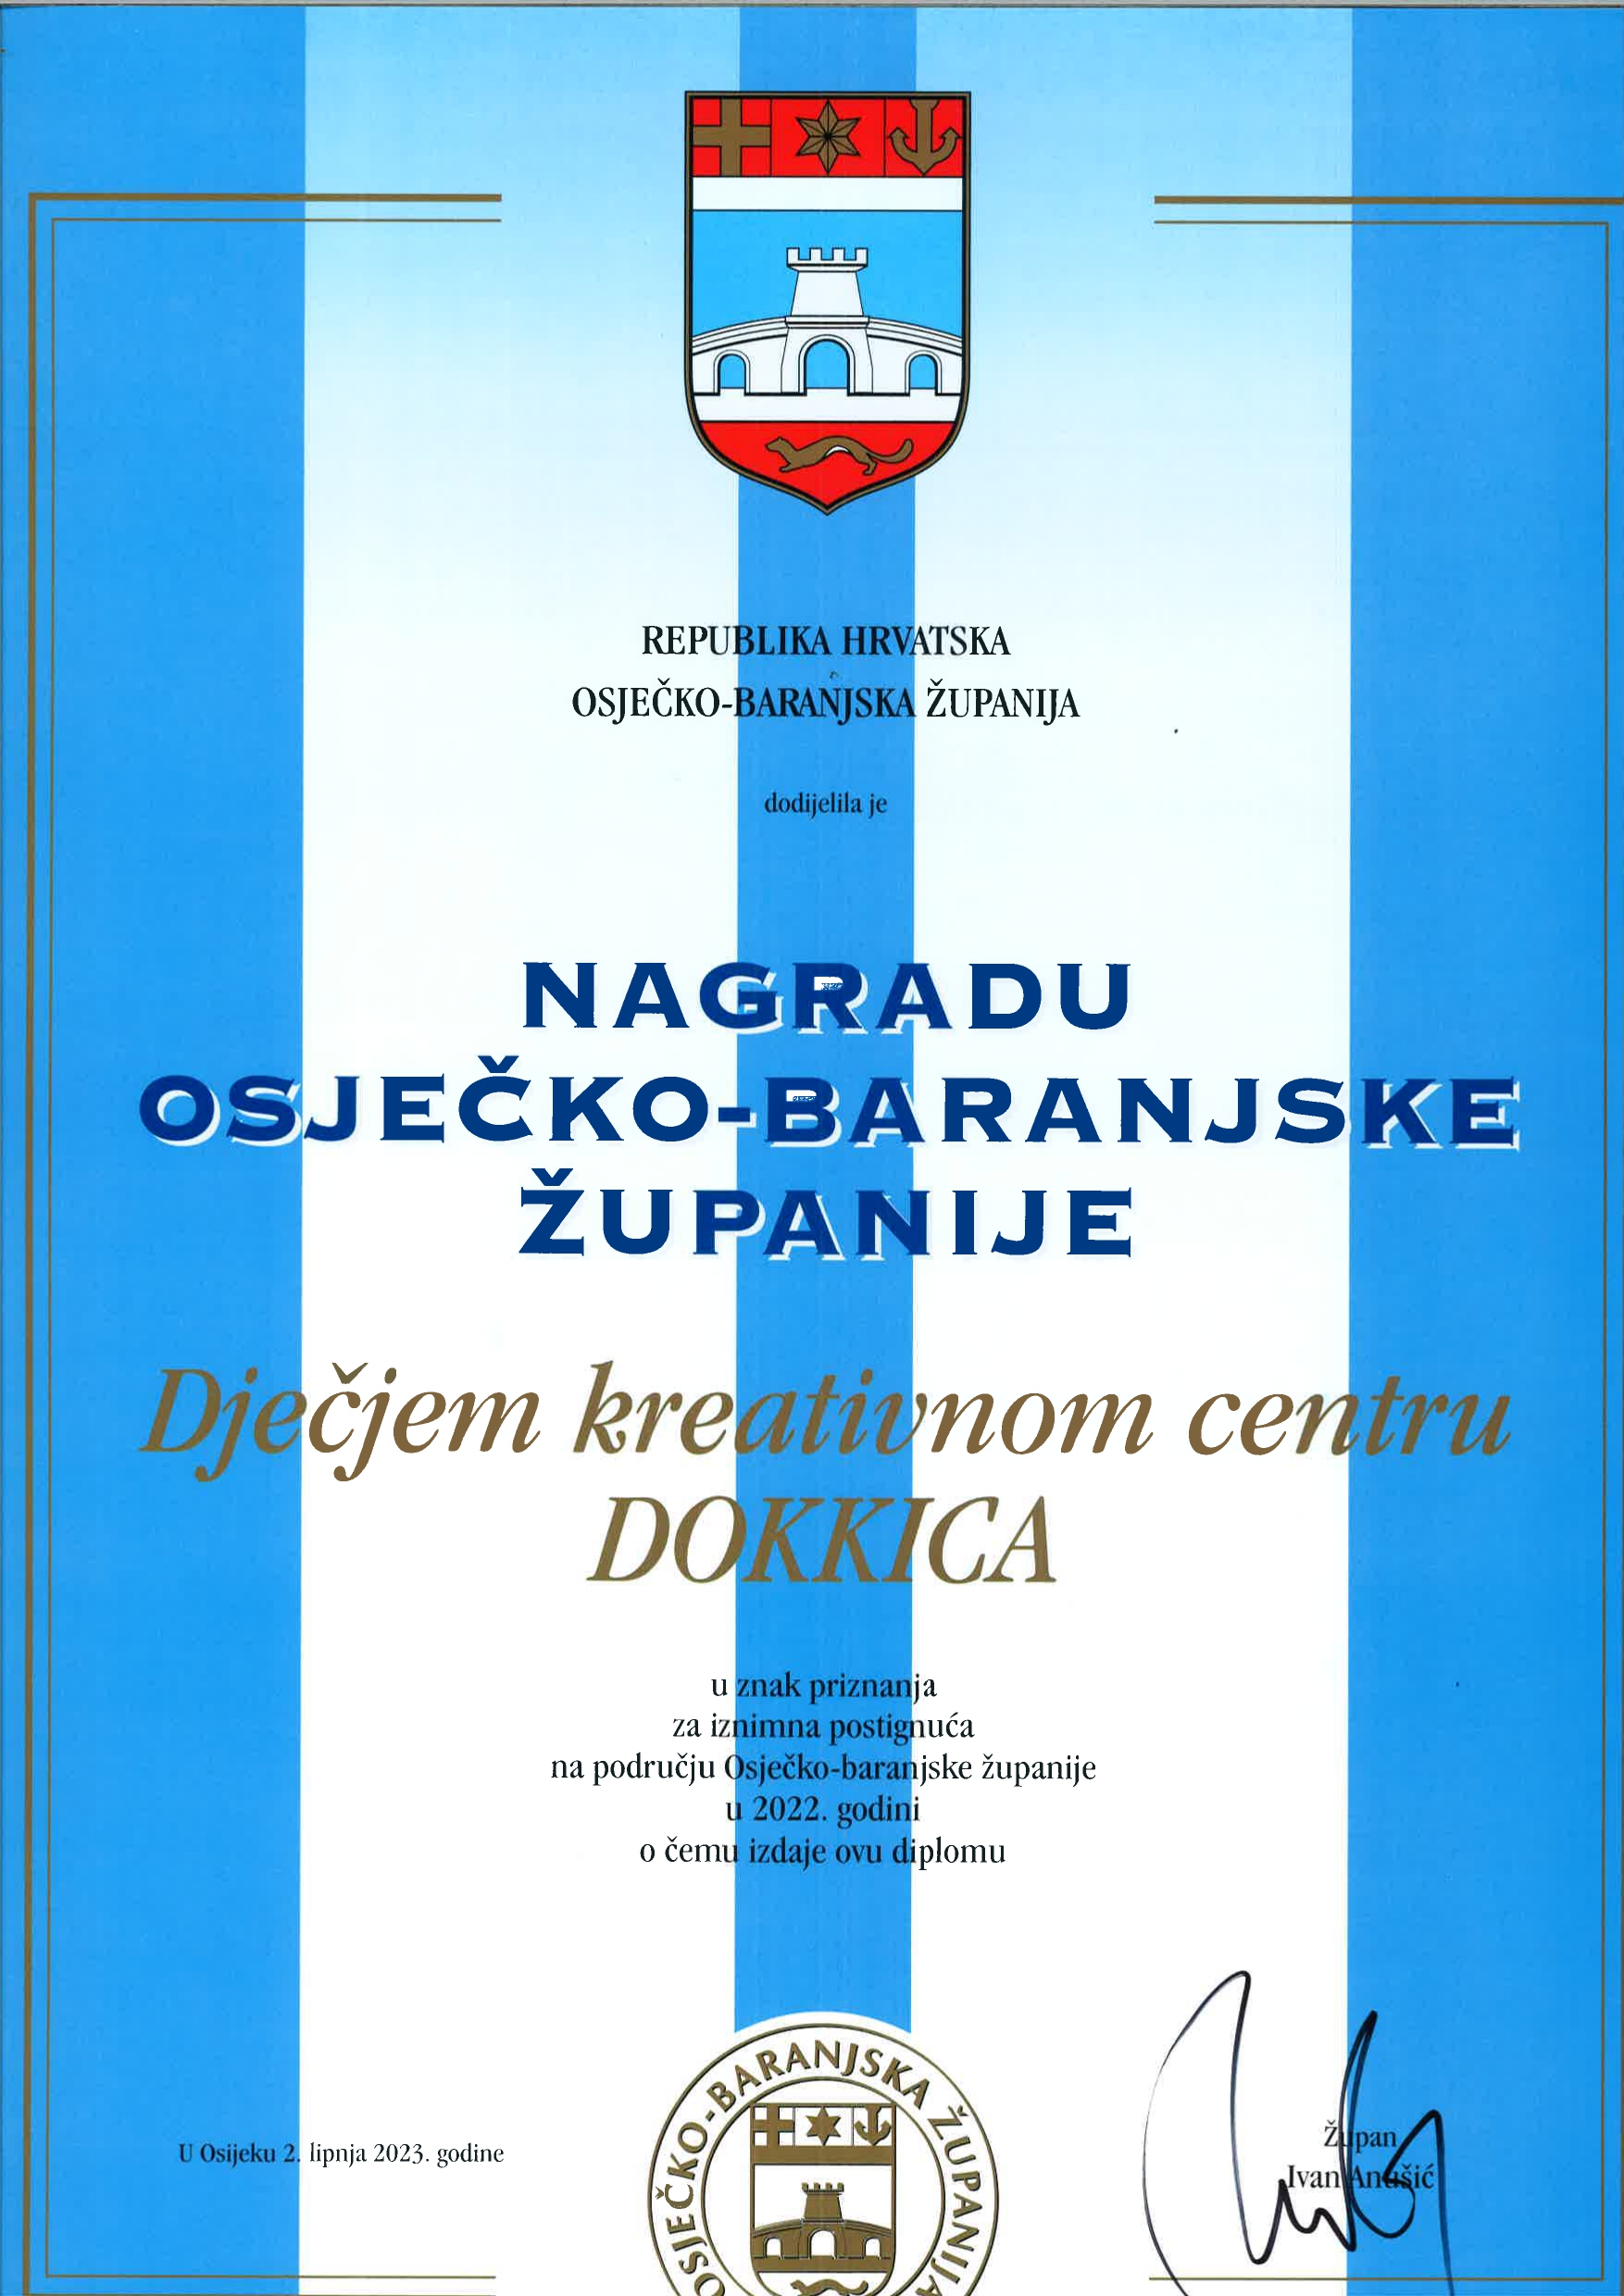 OBZ_nagrada_DOKKICA_2023 (1)_page-0001